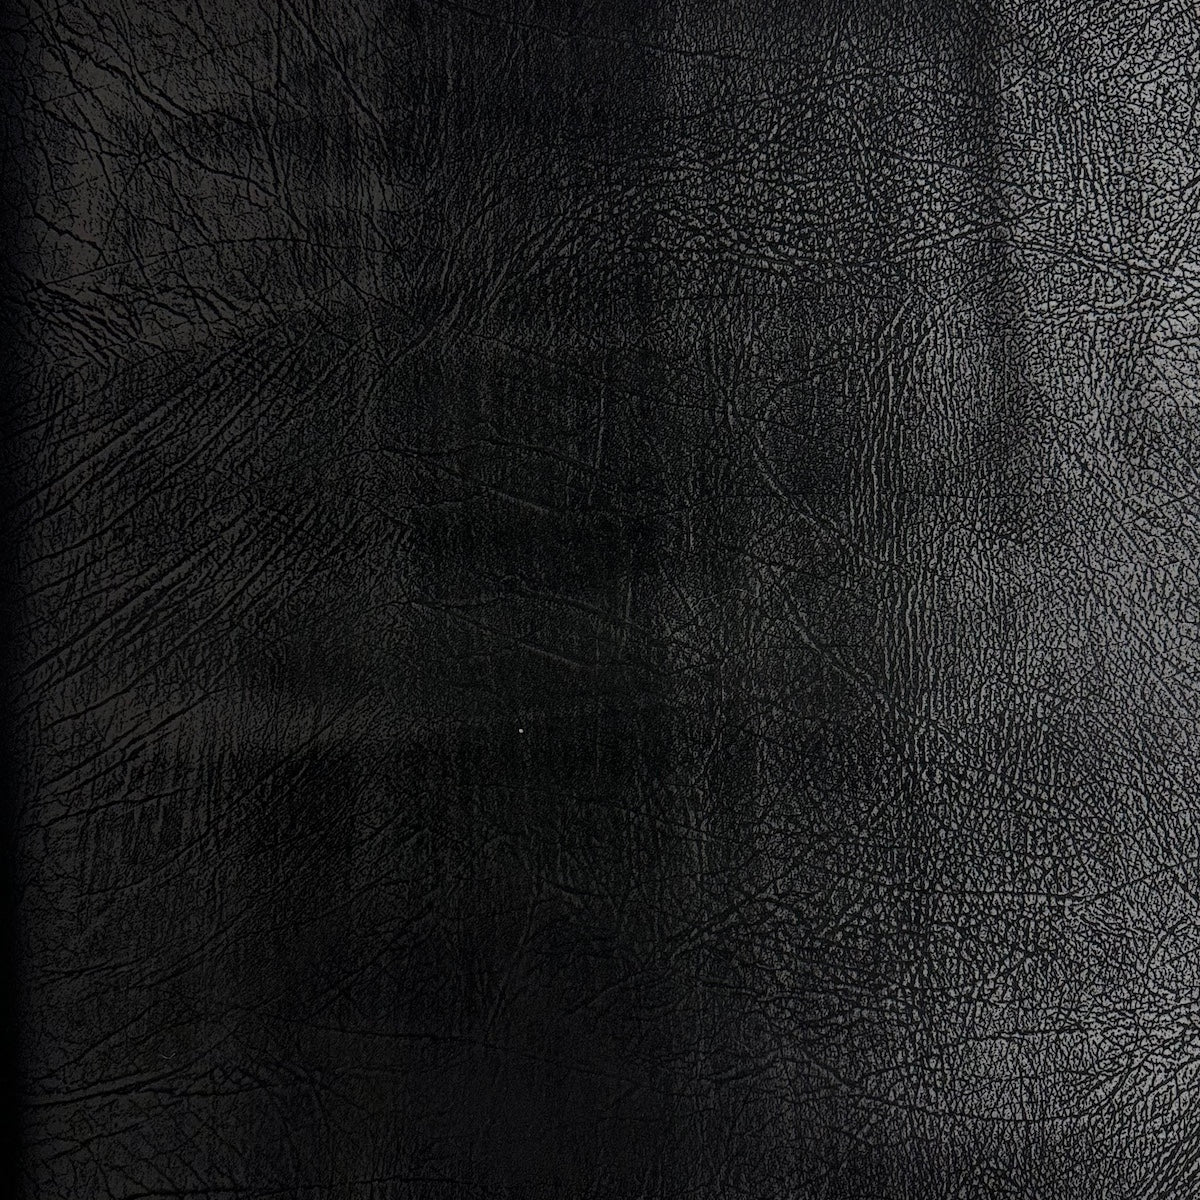 Tela de vinilo de gamuza de imitación de cuero desgastada vintage negra